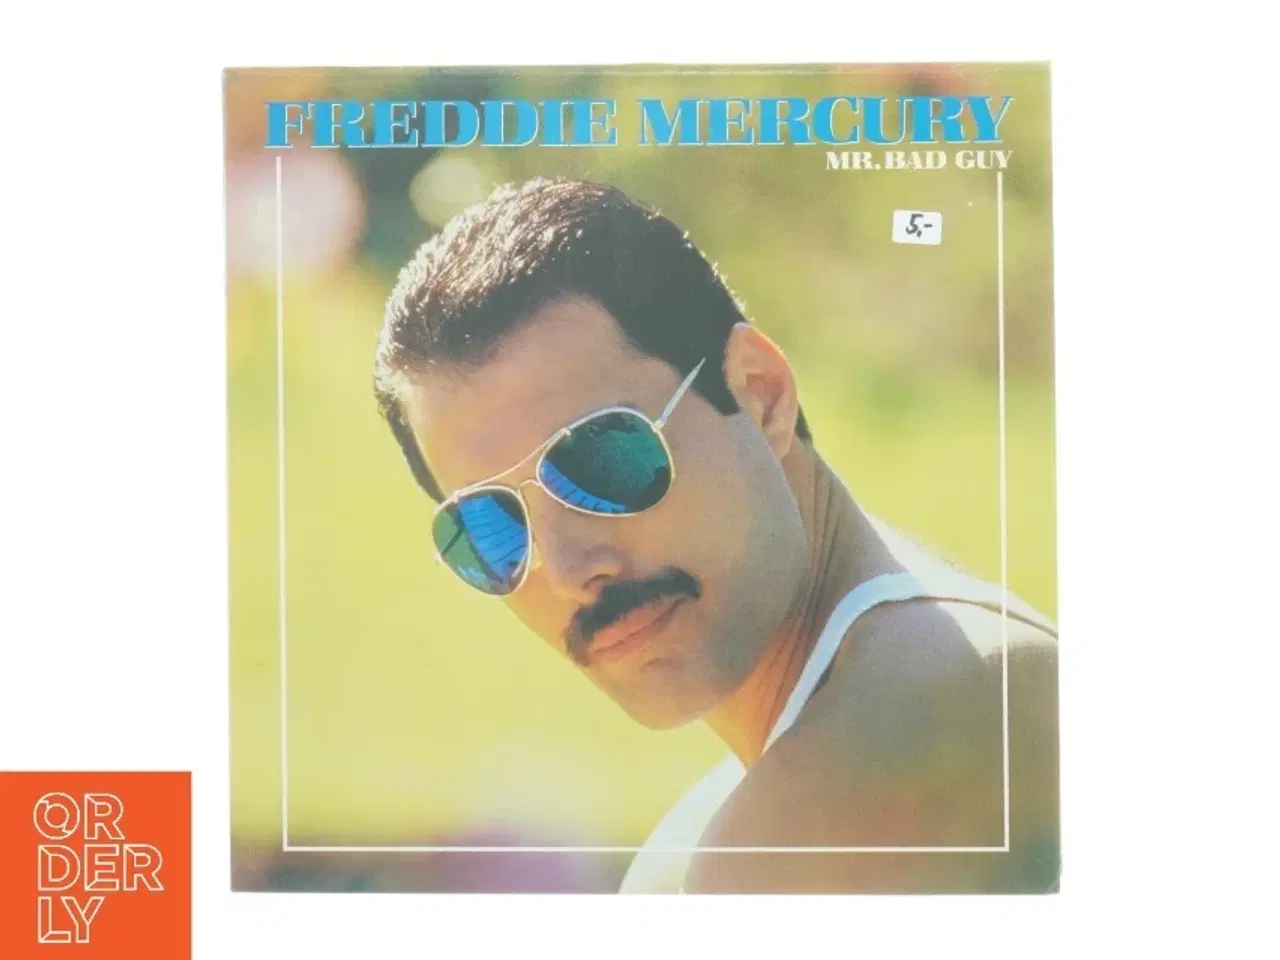 Billede 1 - Freddie Mercury - Mr. Bad Guy Vinyl LP fra CBS (str. 31 x 31 cm)